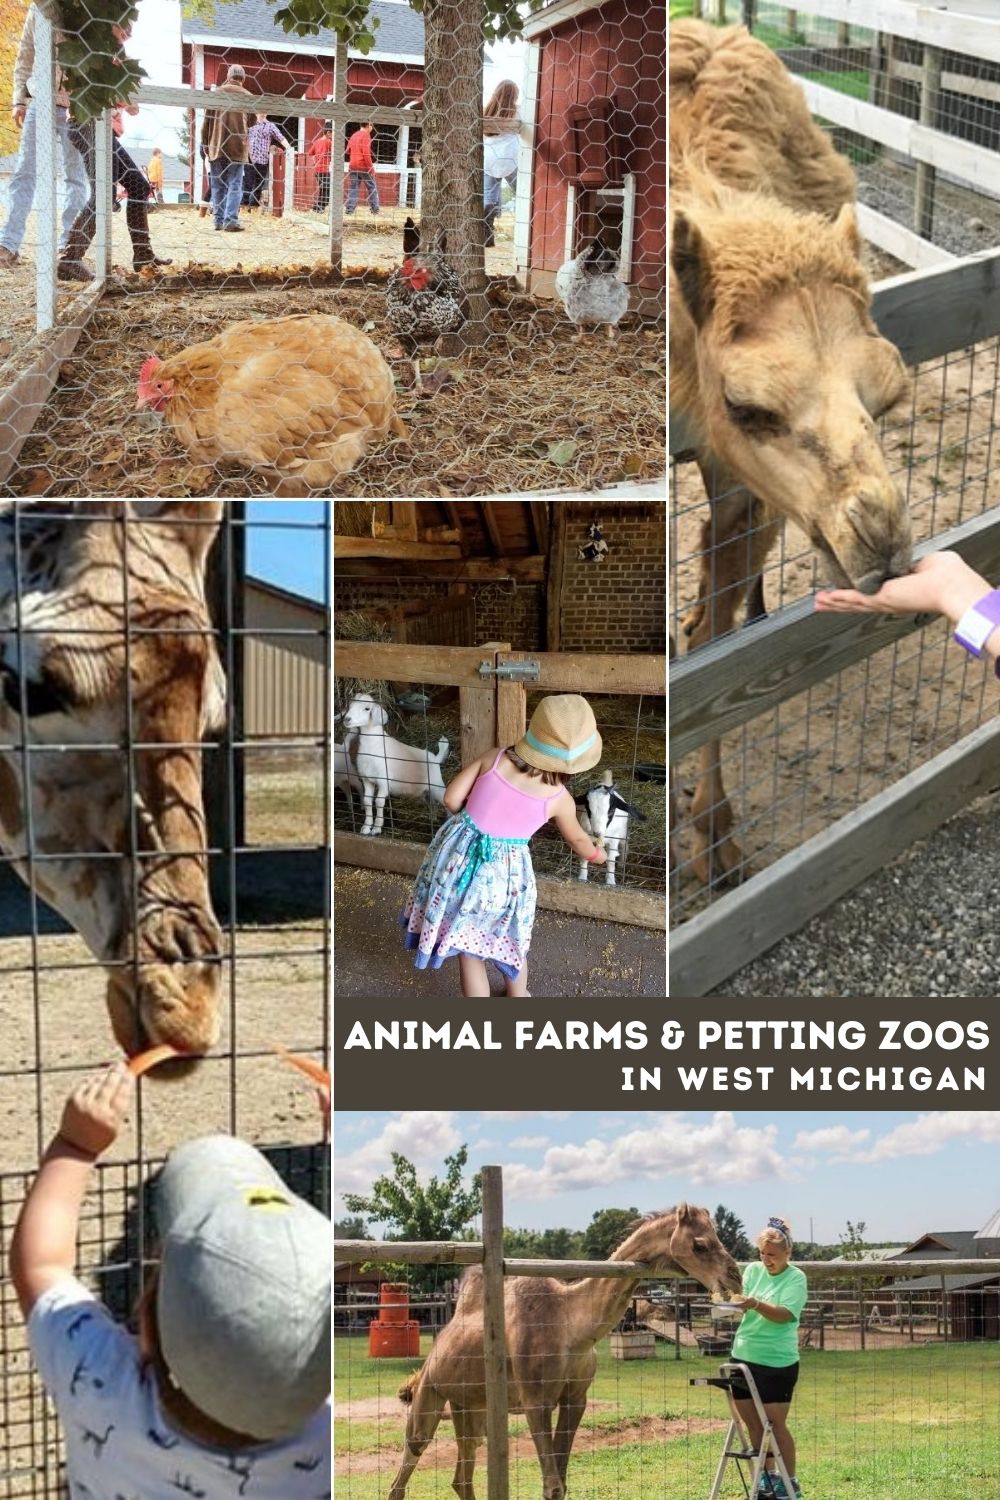 Animal farms & petting zoos